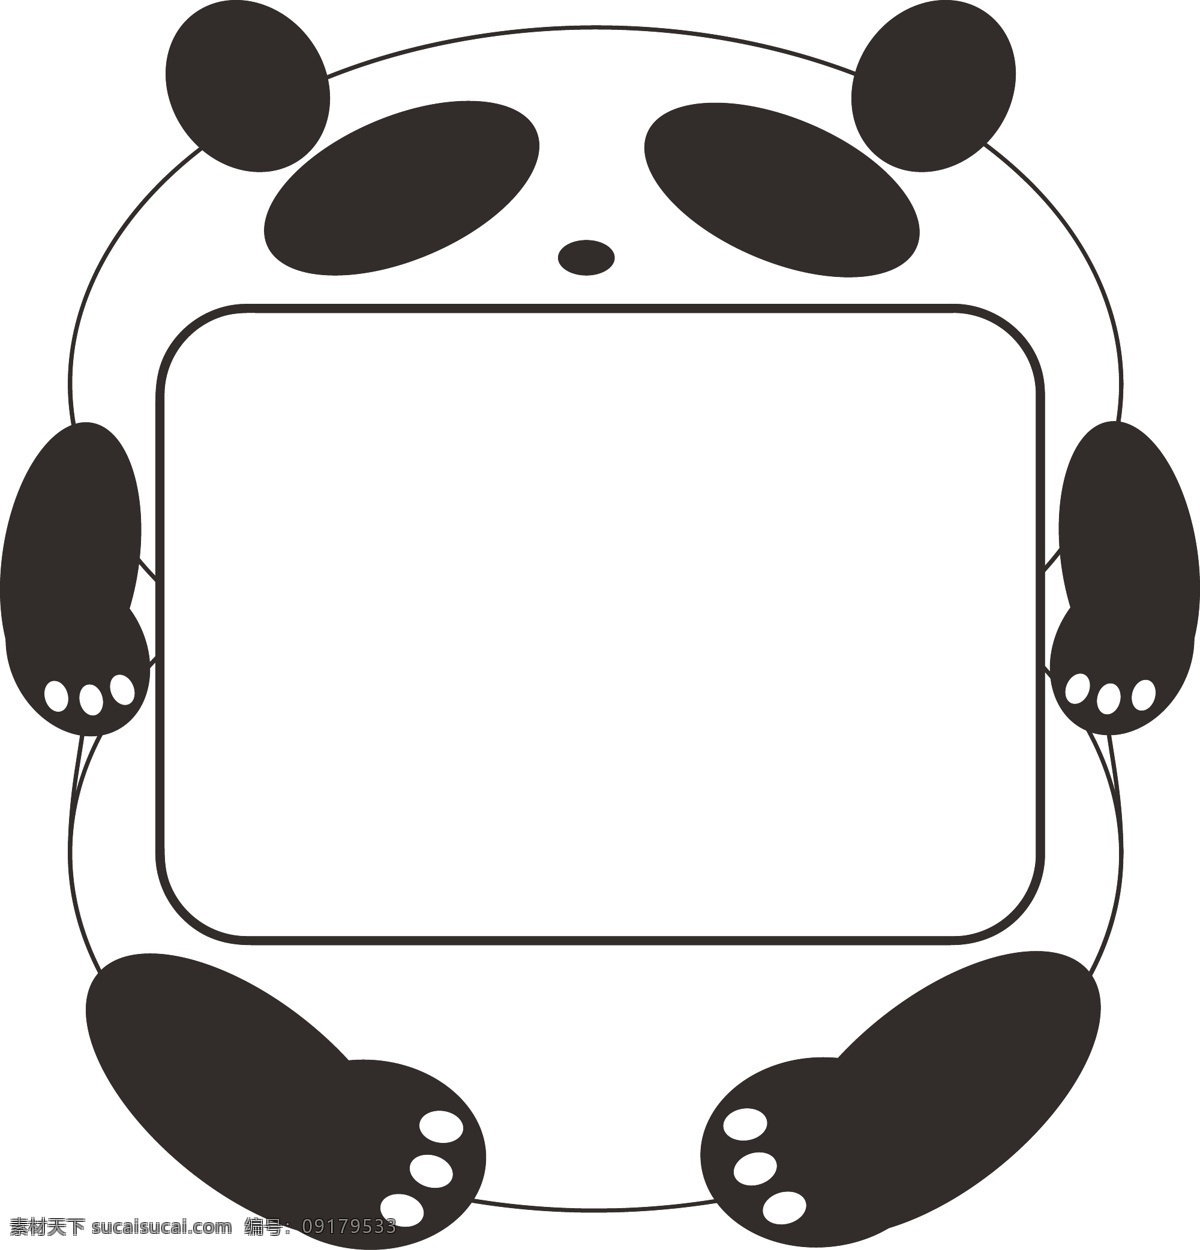 矢量 熊猫 电视台 熊猫电视机 卡通电视机 卡通电视 卡通 矢量卡通电视 矢量卡通 可爱电视机 可爱 电视 外框 熊猫外框 可爱外框 矢量外框 写字板 可爱写字板 边框 可爱边框 熊猫边框 失恋 野生动物 生物世界